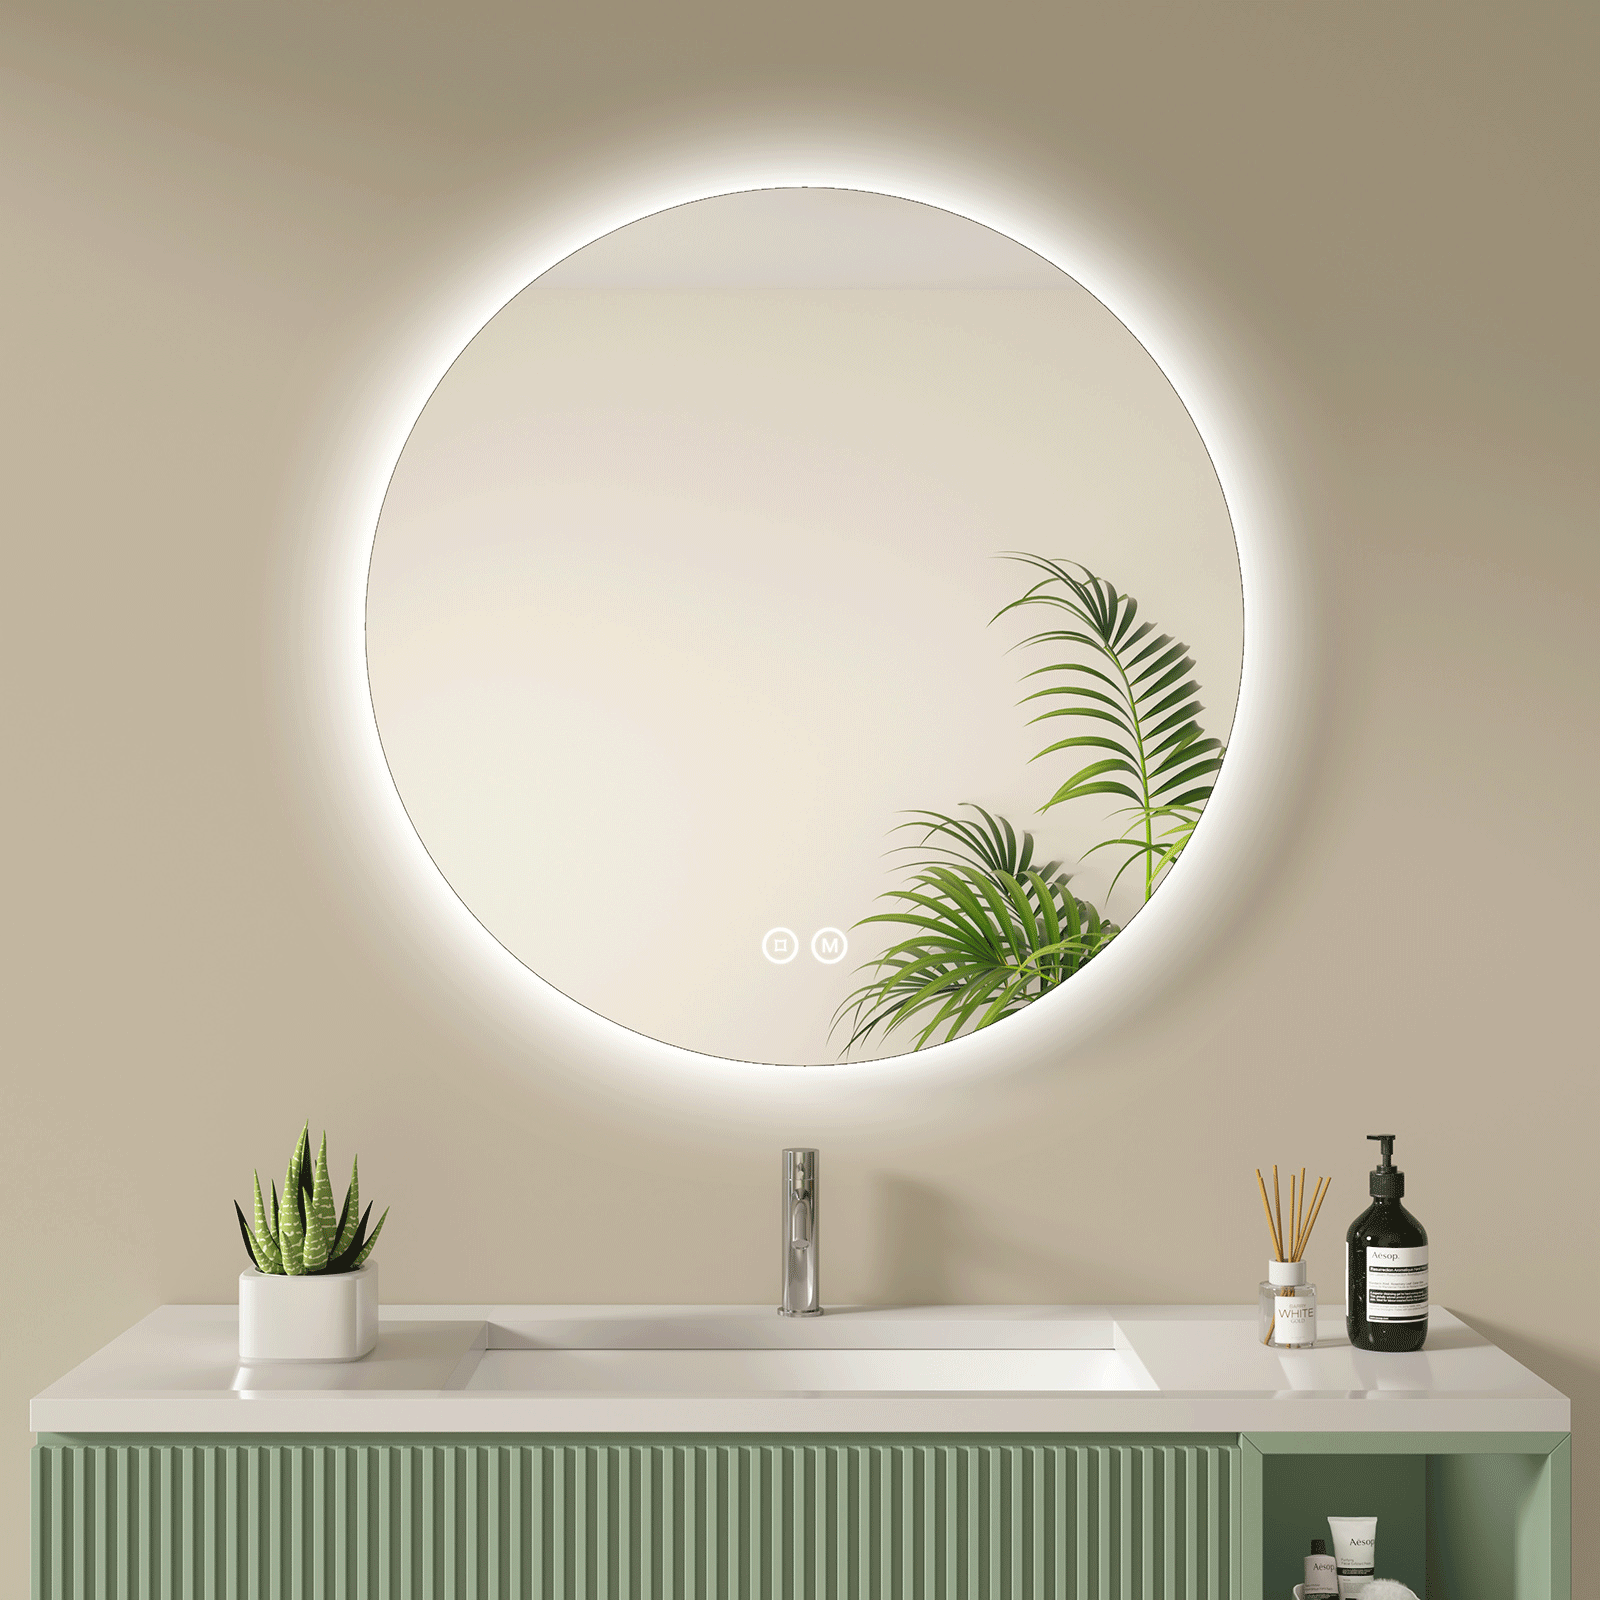  S'AFIELINA Badspiegel mit Ablage 45x60 cm Spiegel mit